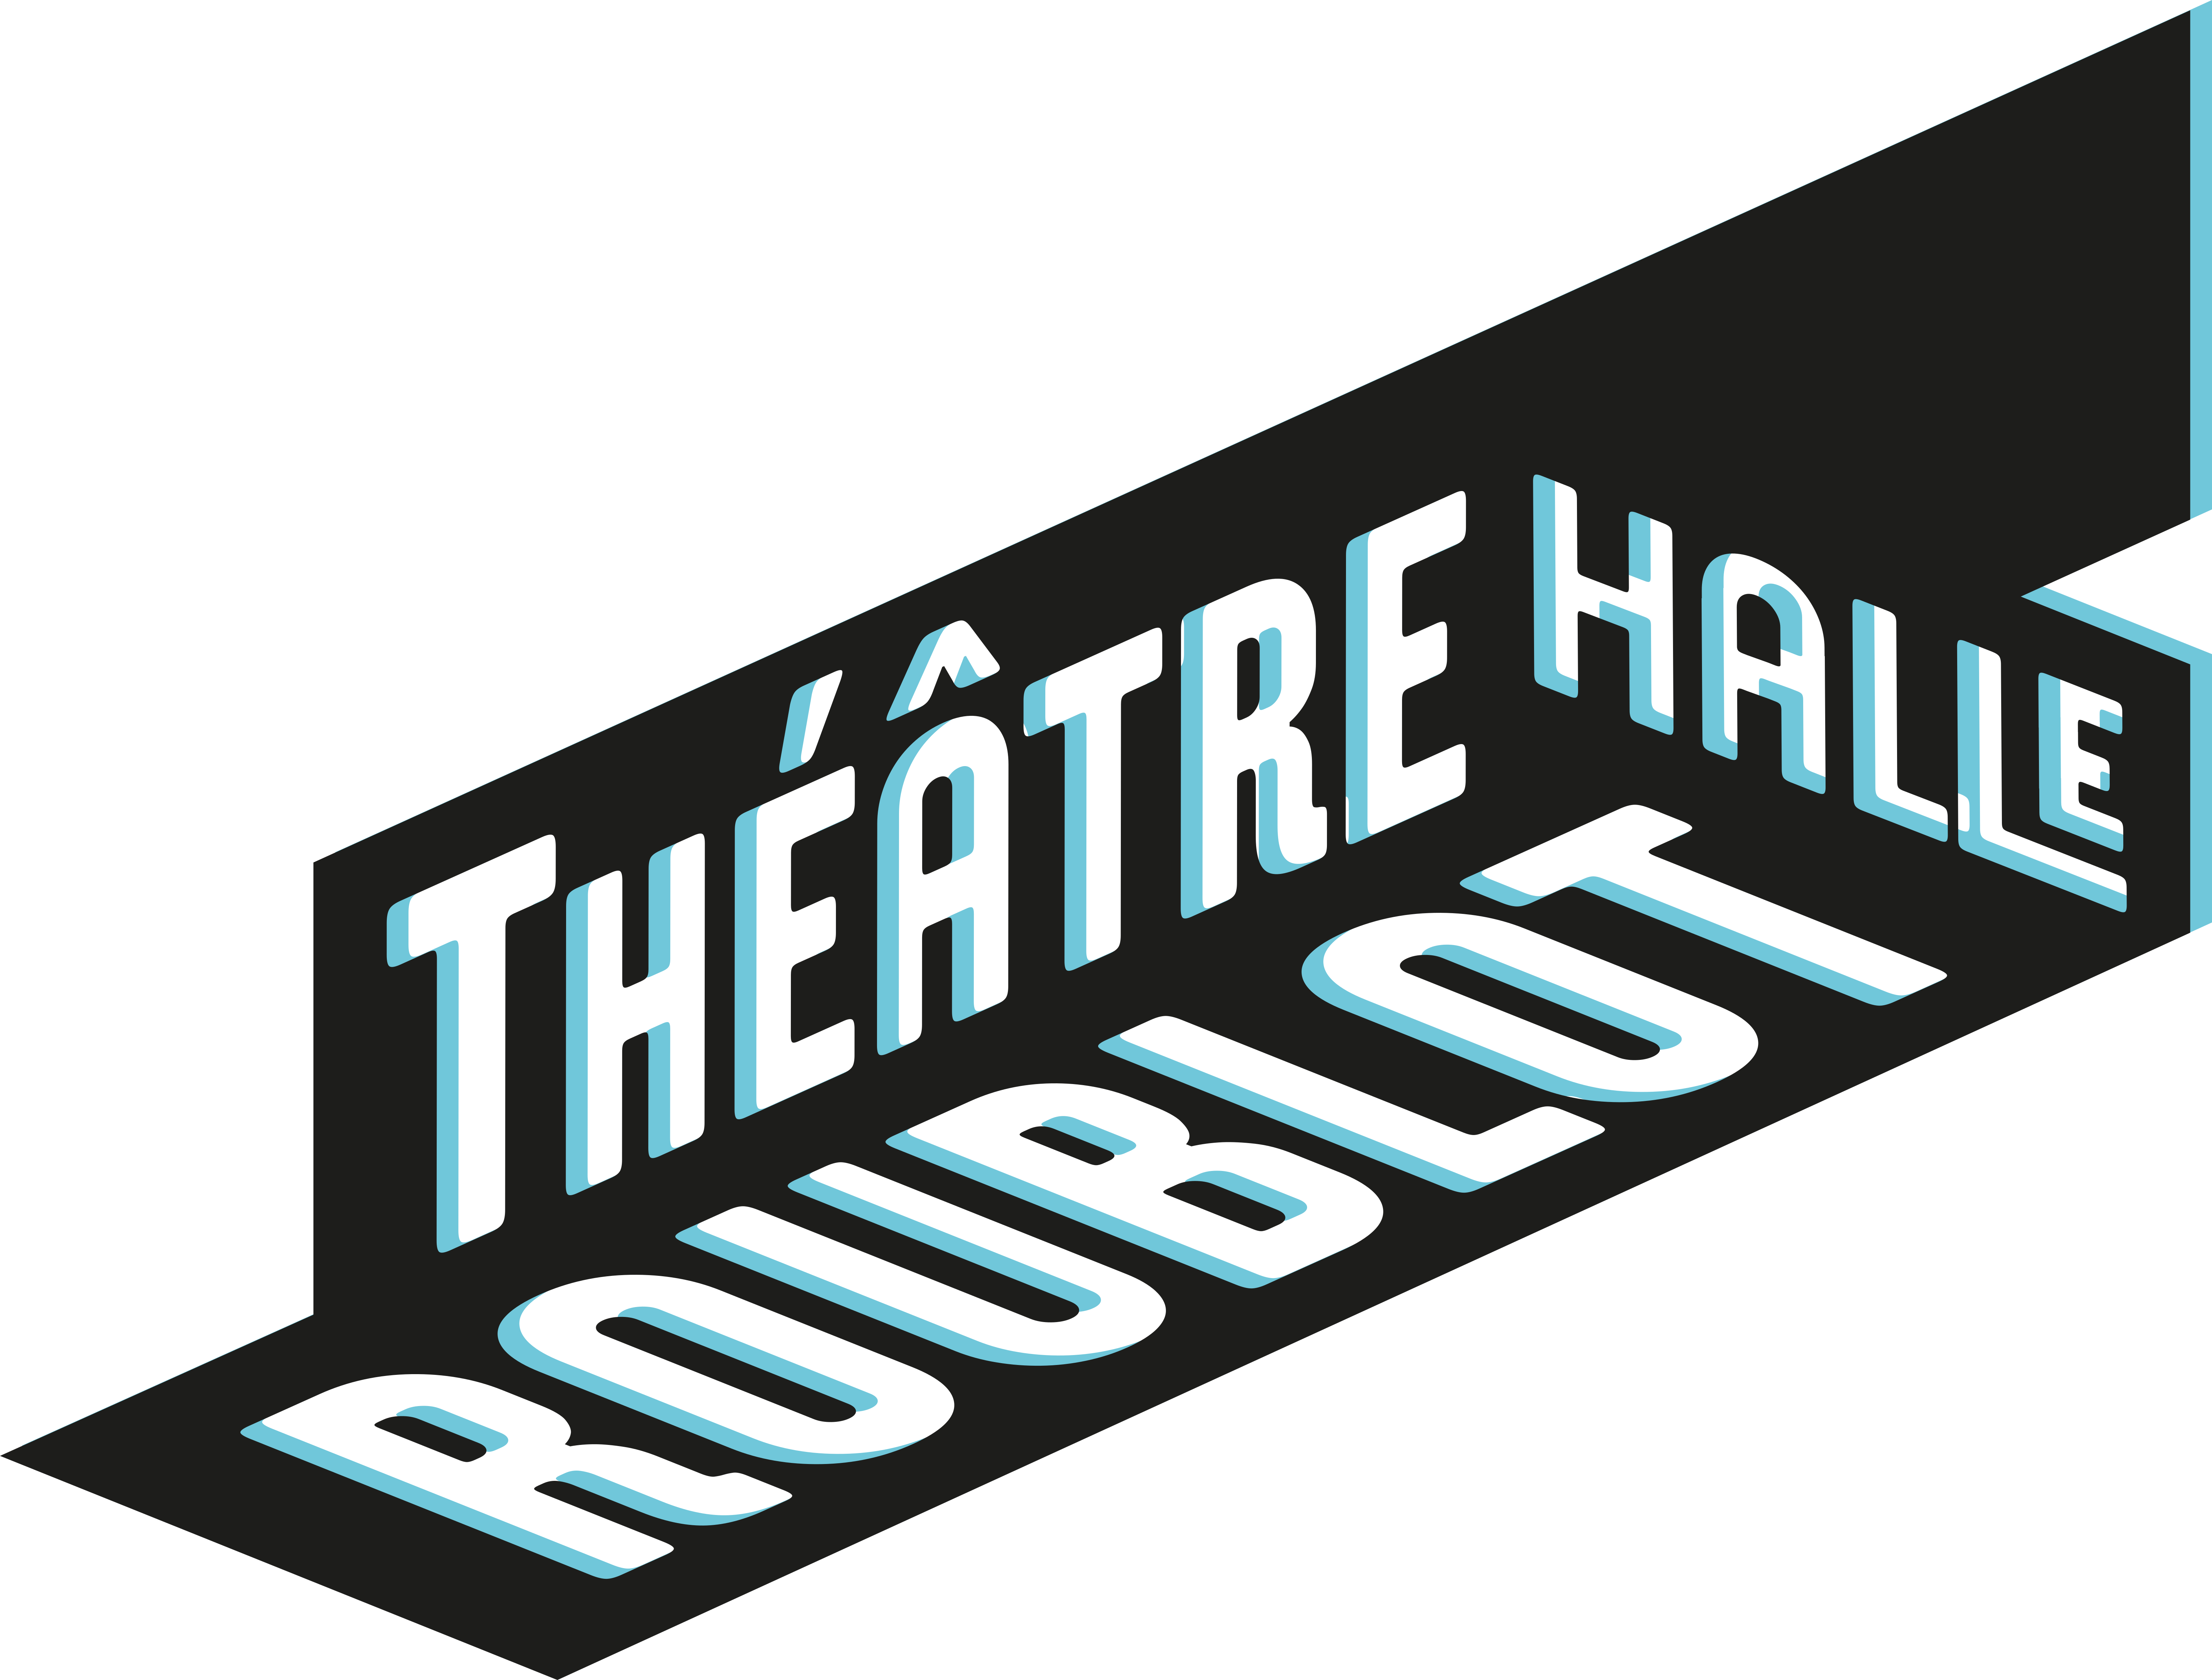 Le Théâtre Halle Roublot